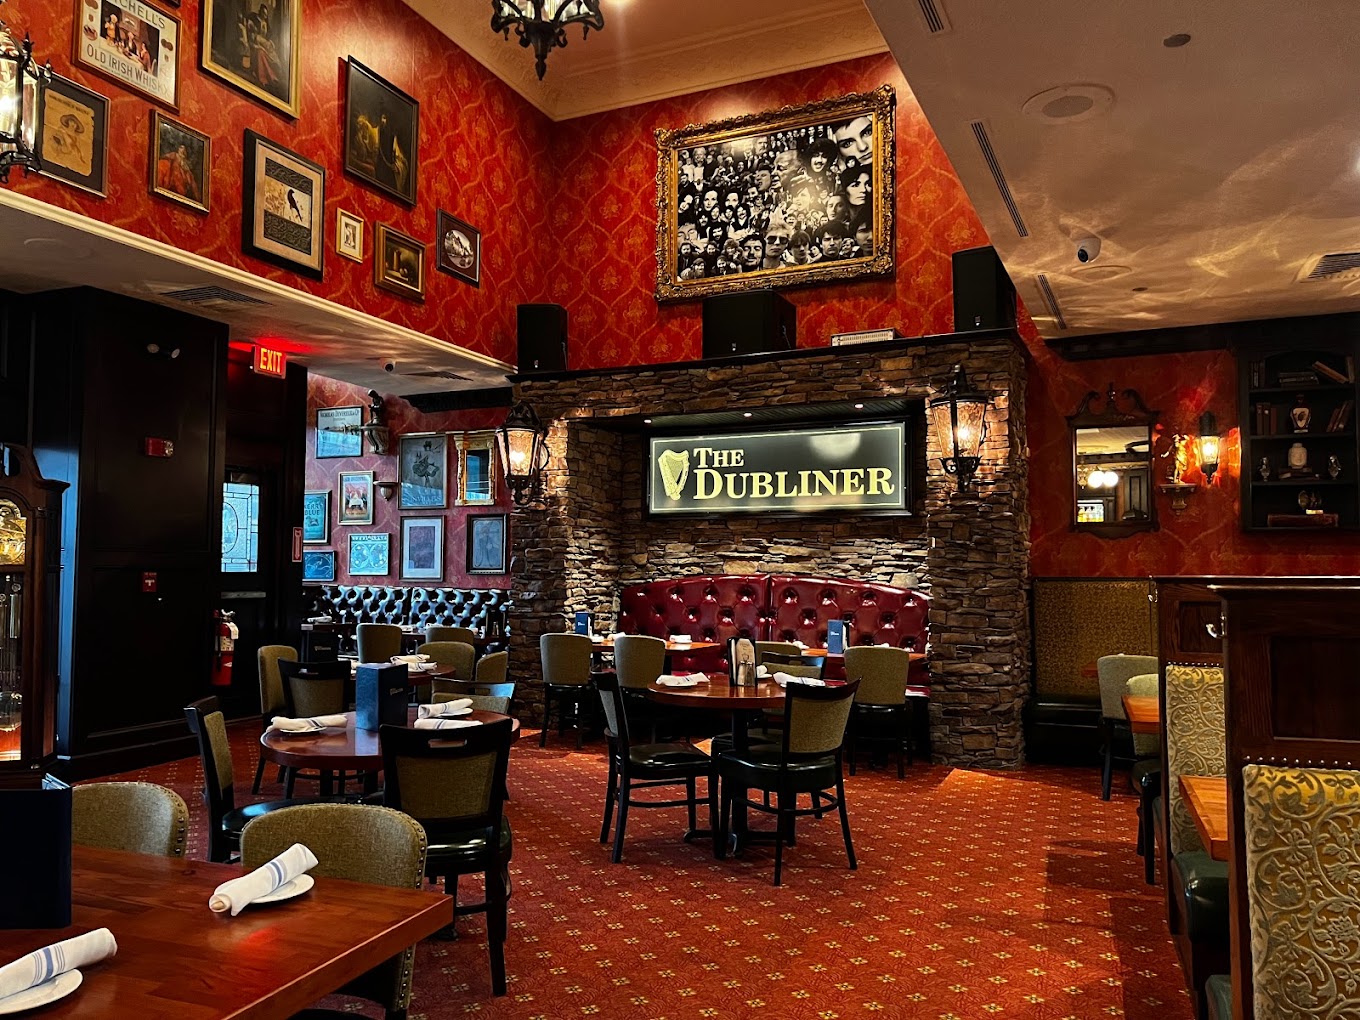 The Dubliner Irish Pub & Restaurant